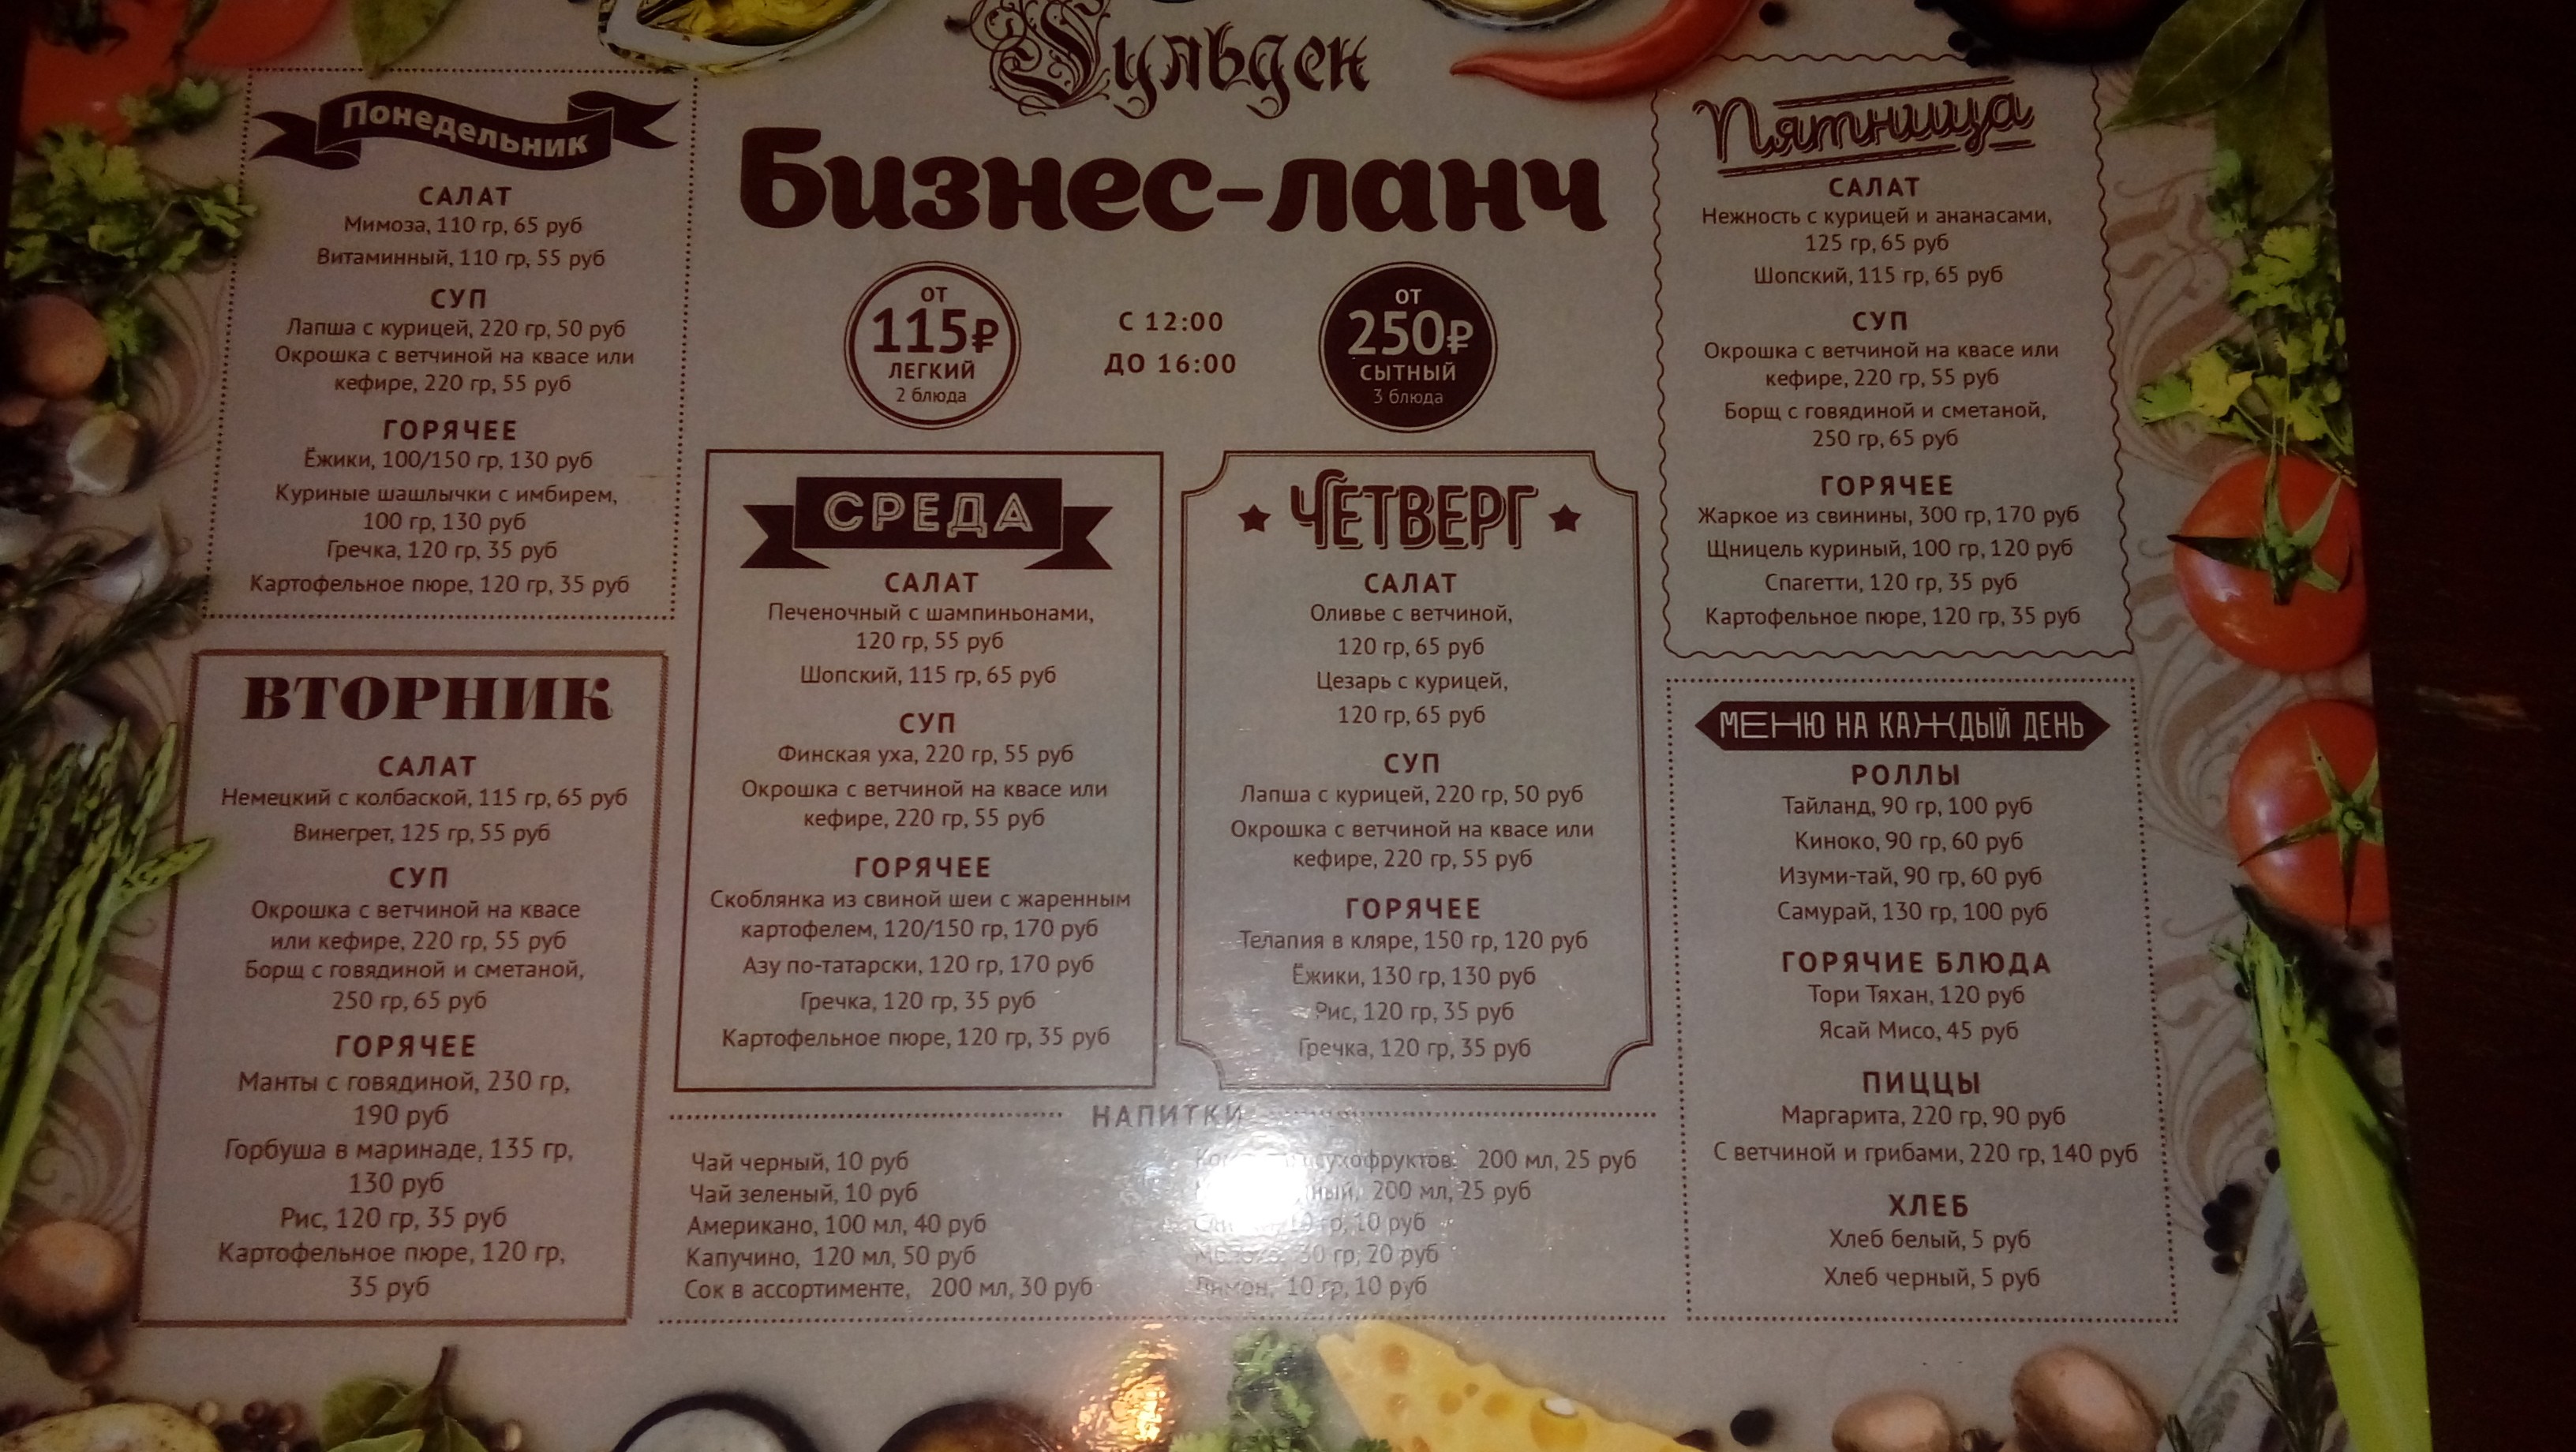 Зебры суши омск бизнес ланч меню фото 56